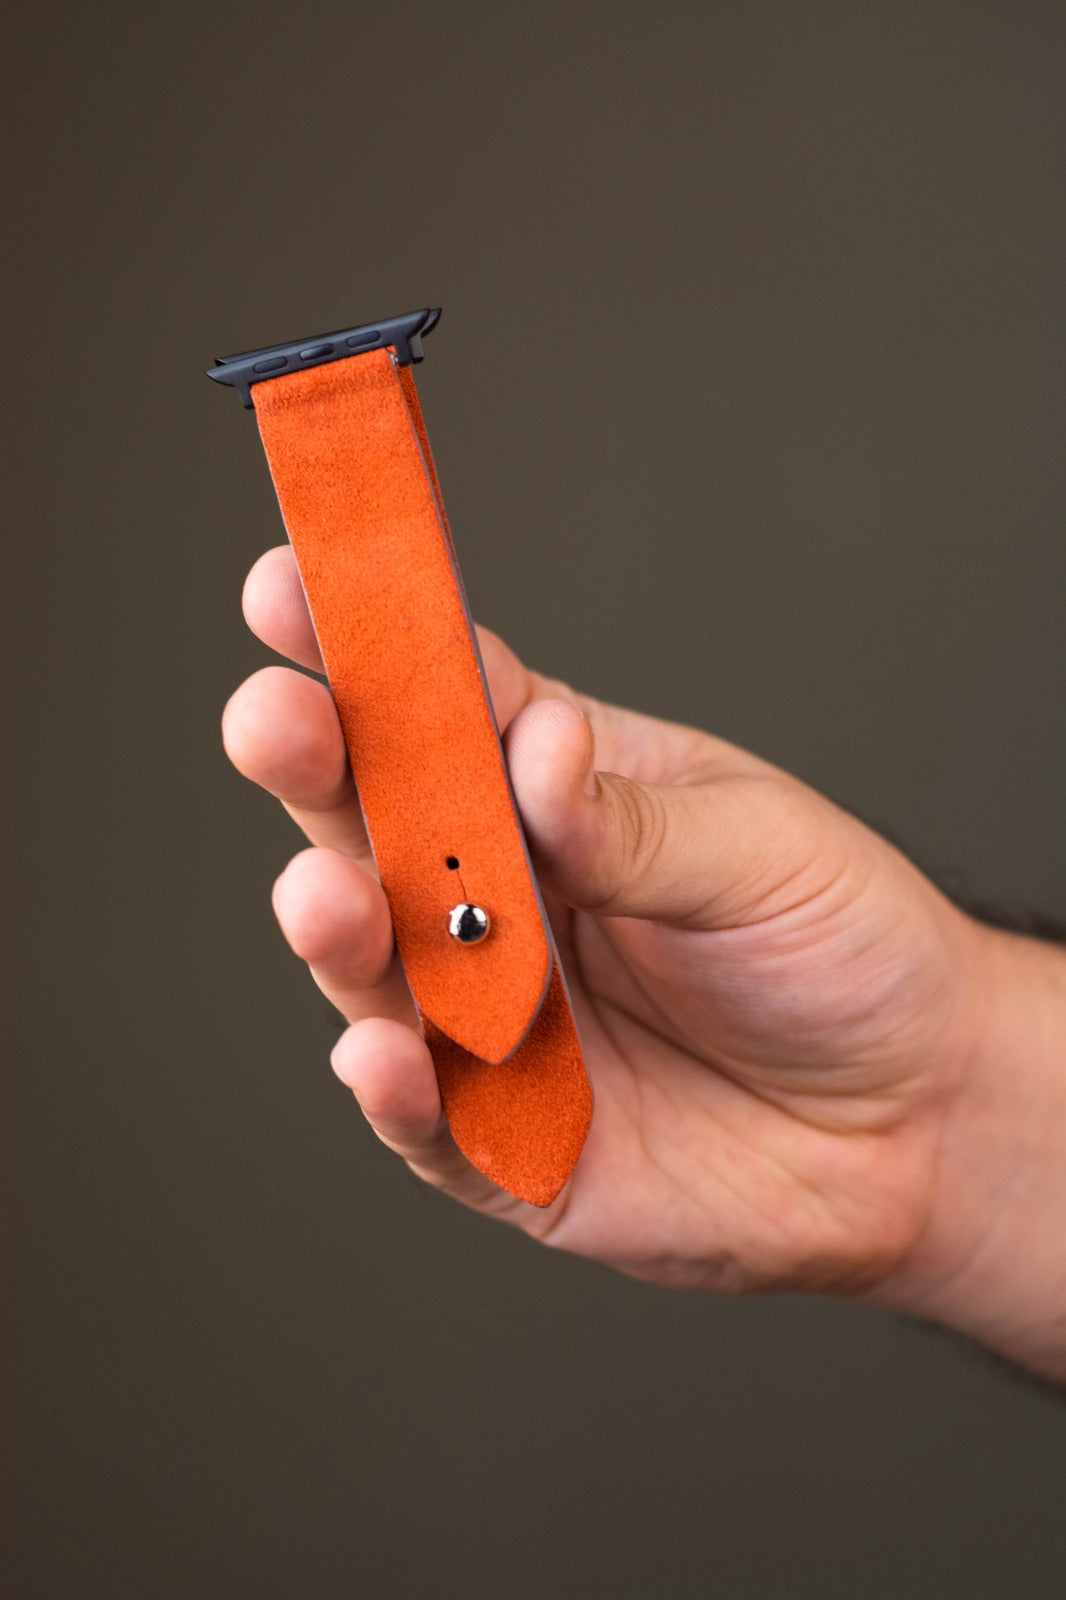 International Orange Apple Watch Strap - Suede Leather Strap